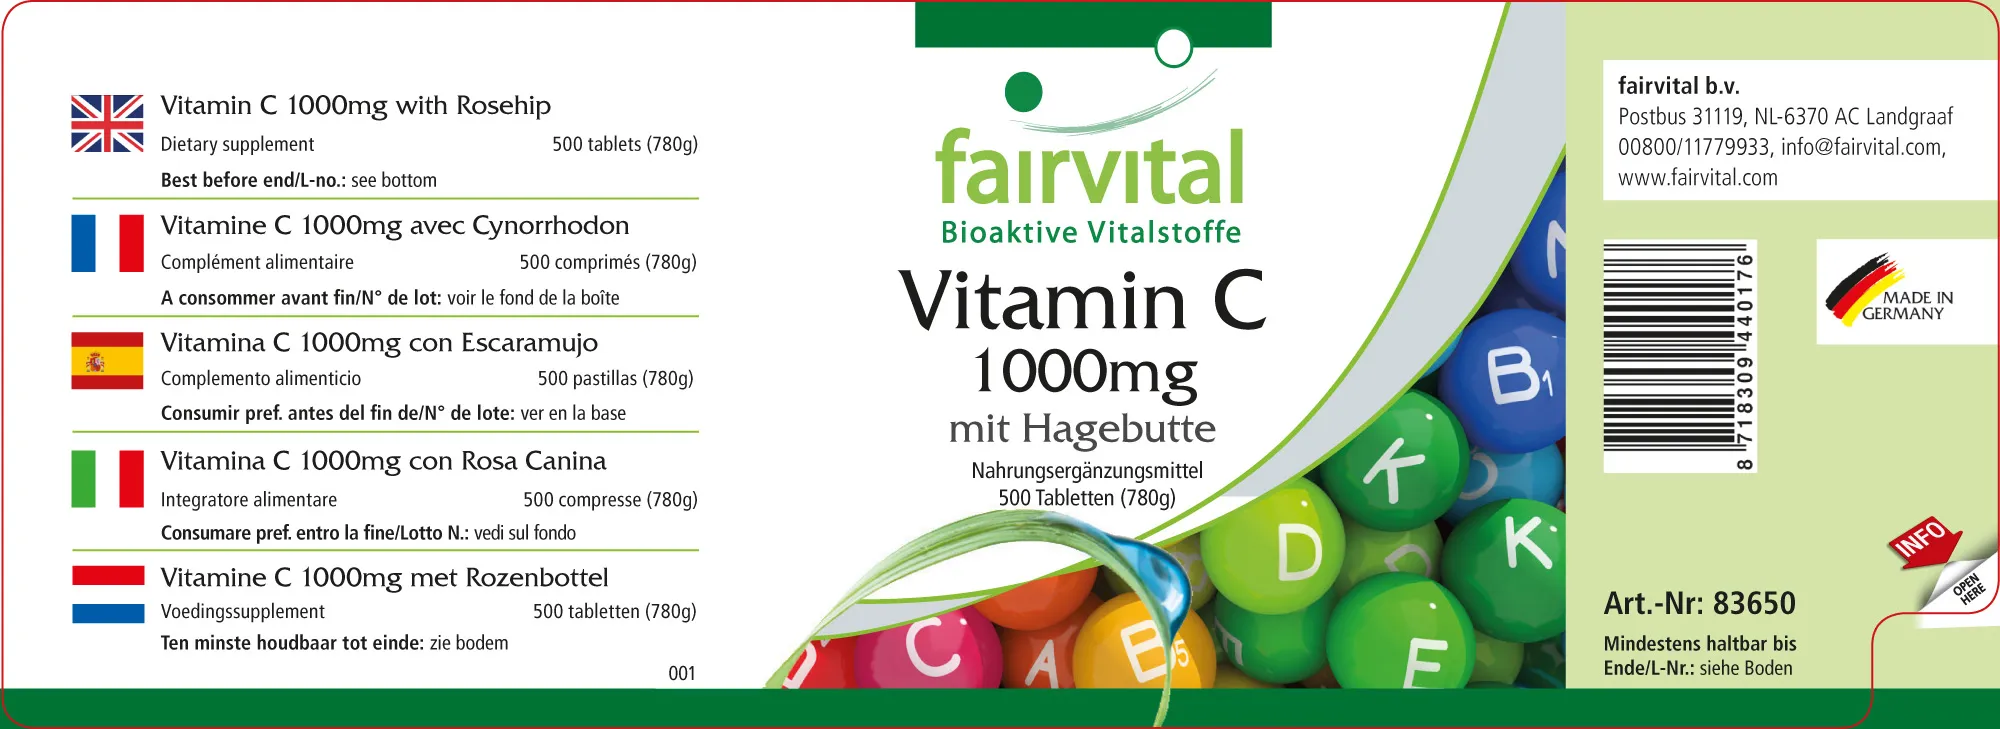 Vitamin C 1000mg mit Hagebutte - 500 Tabletten